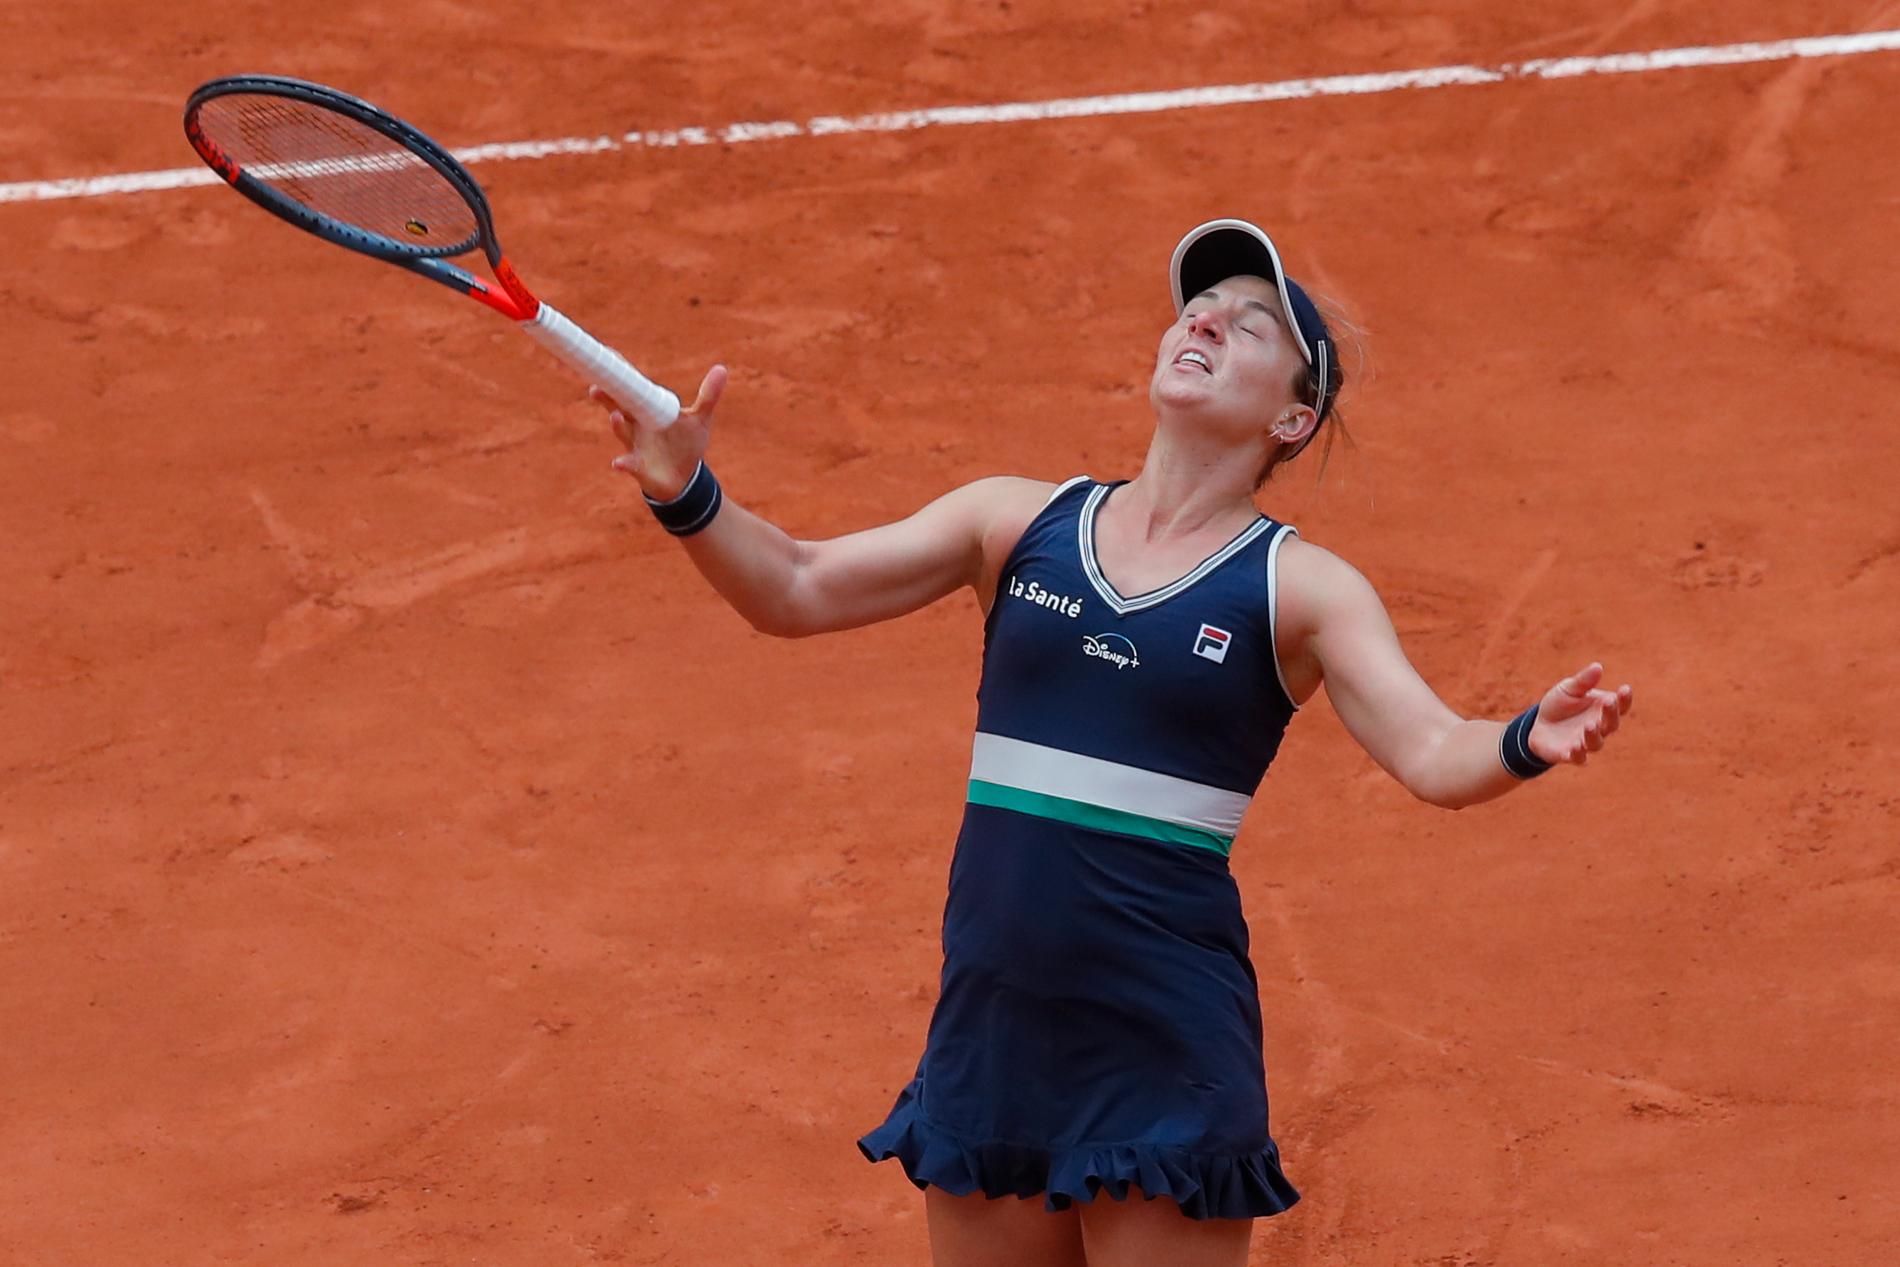 Nadia Podoroska kan knappt tro att det är sant, att hon som kvalspelare nått semifinal i Franska mästerskapen.